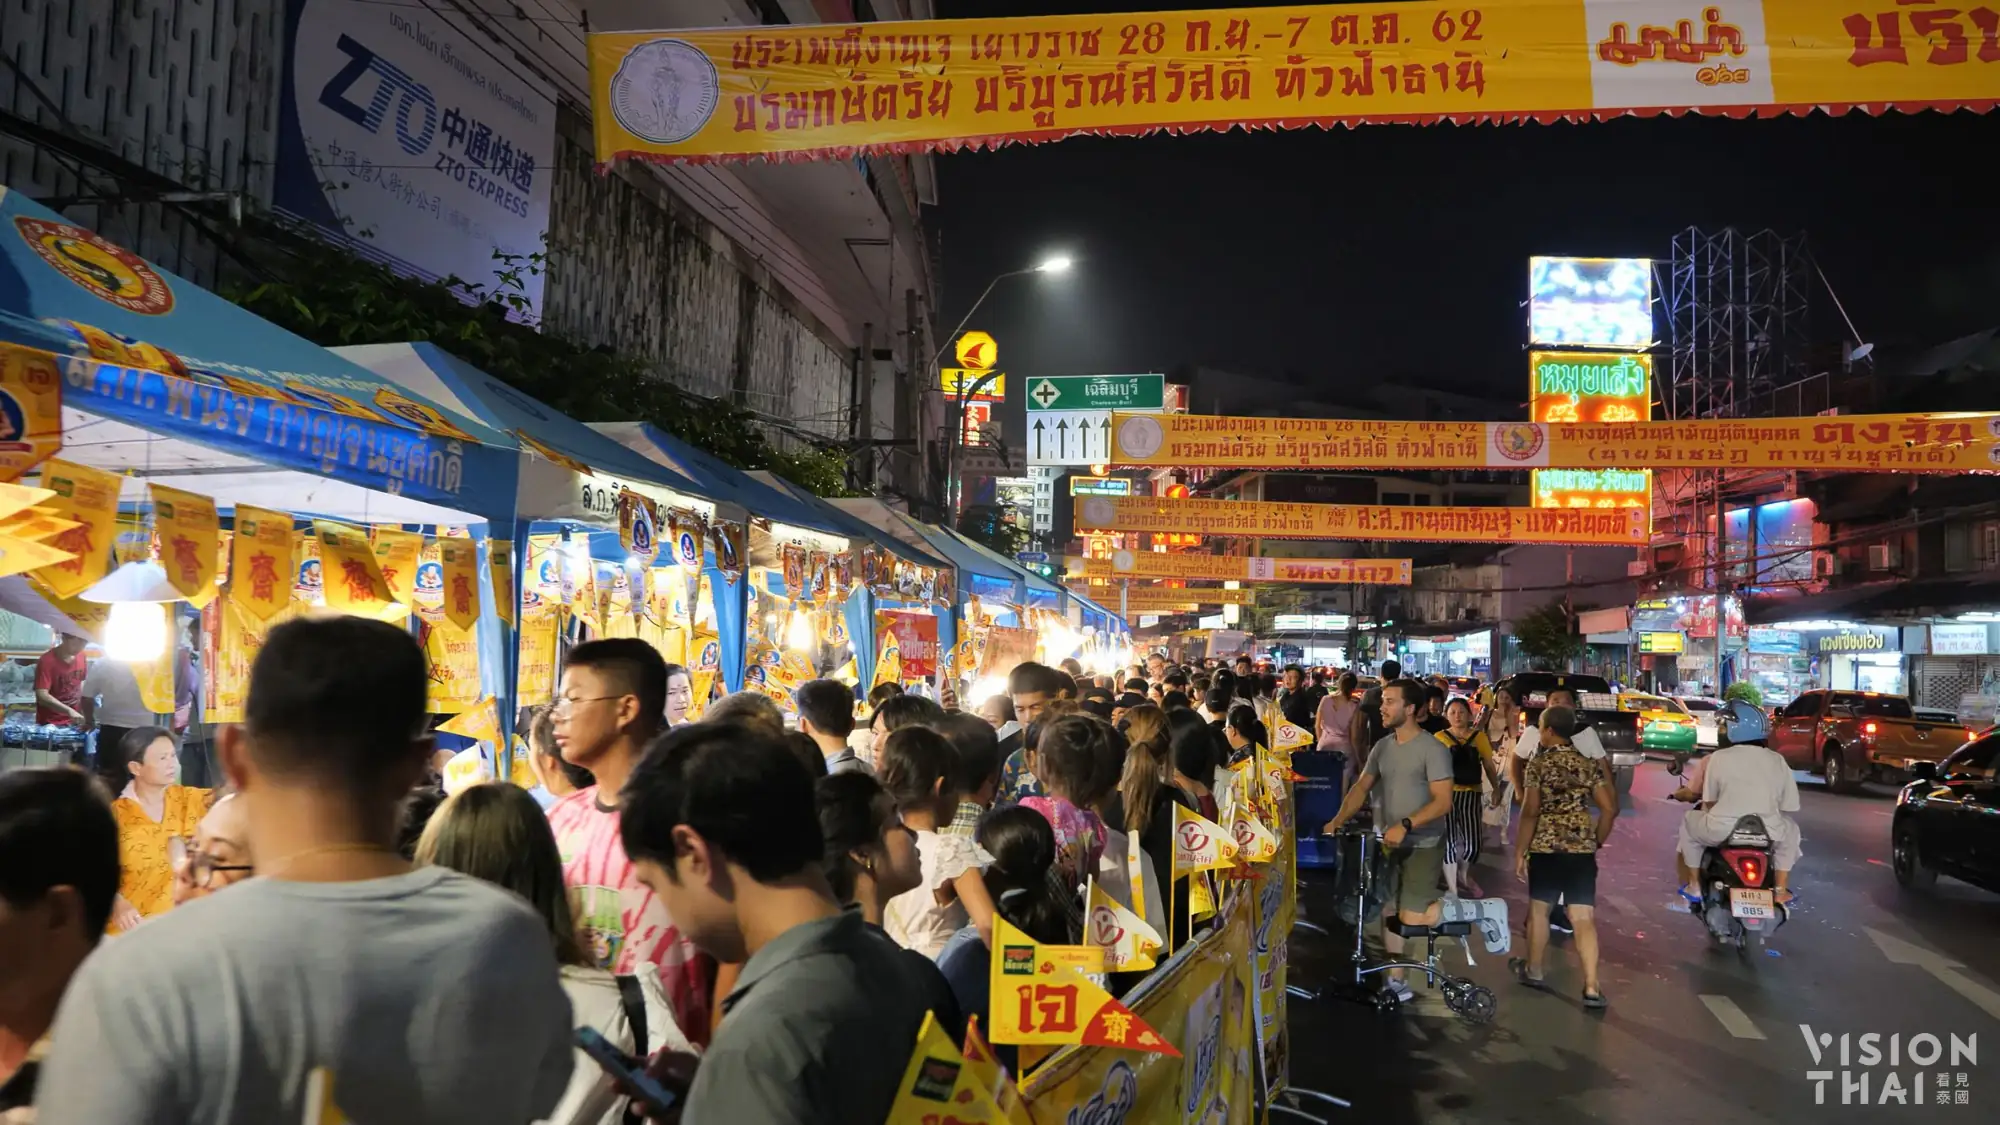 每年泰国斋节曼谷中国城会举办一系列的斋食活动